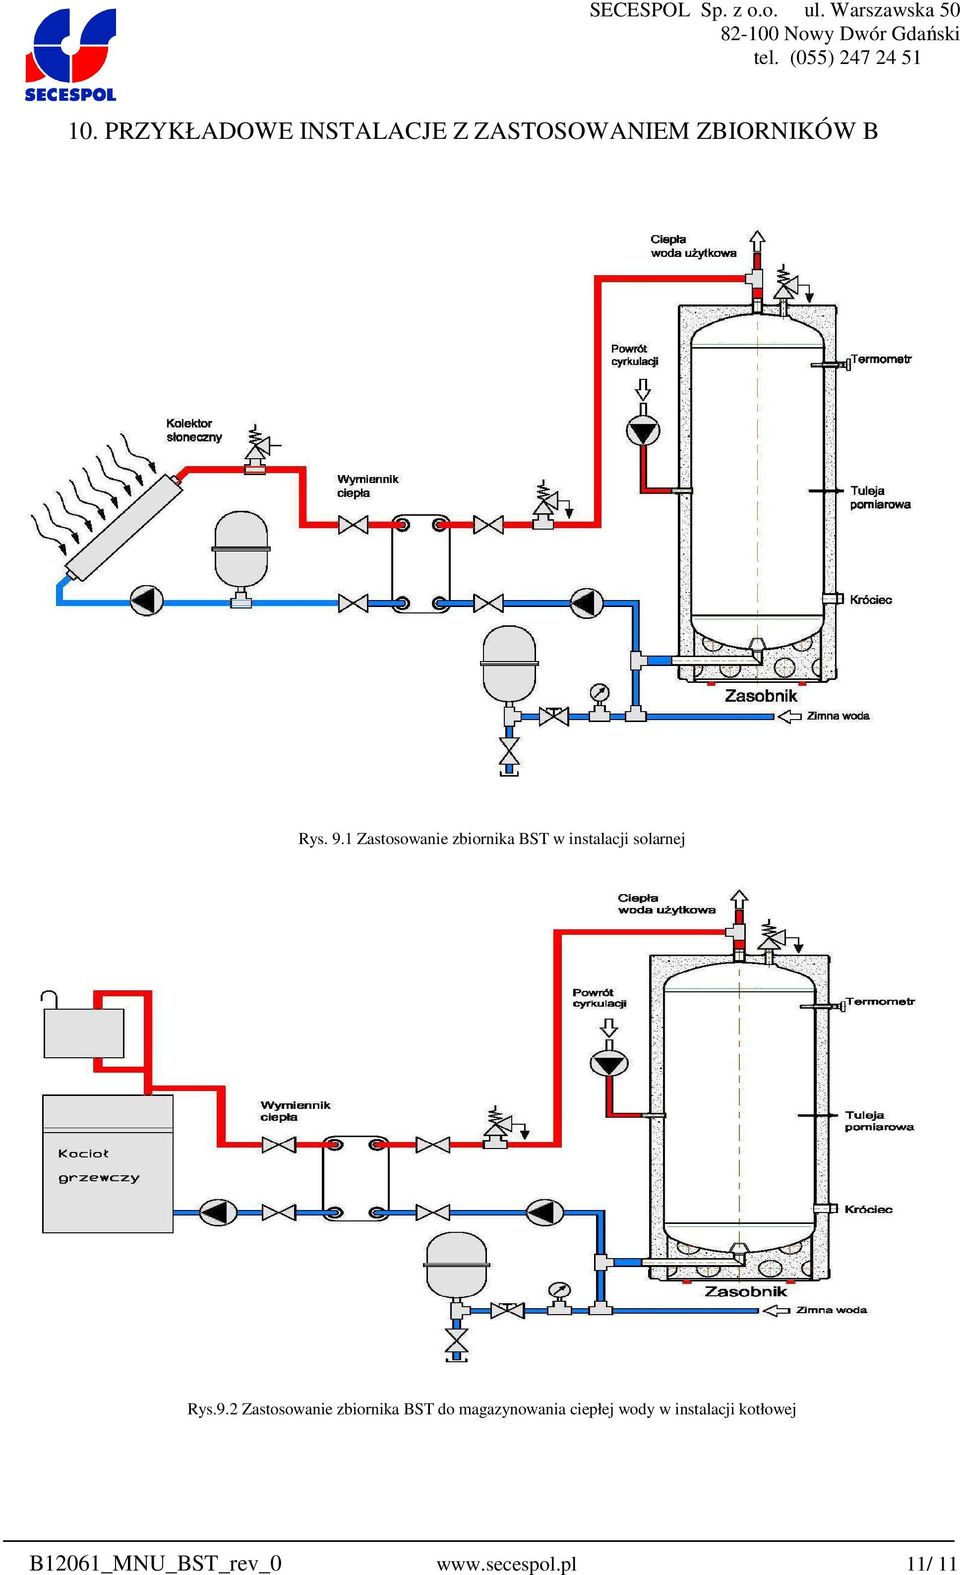 Zastosowanie zbiornika BST do magazynowania ciepłej wody w